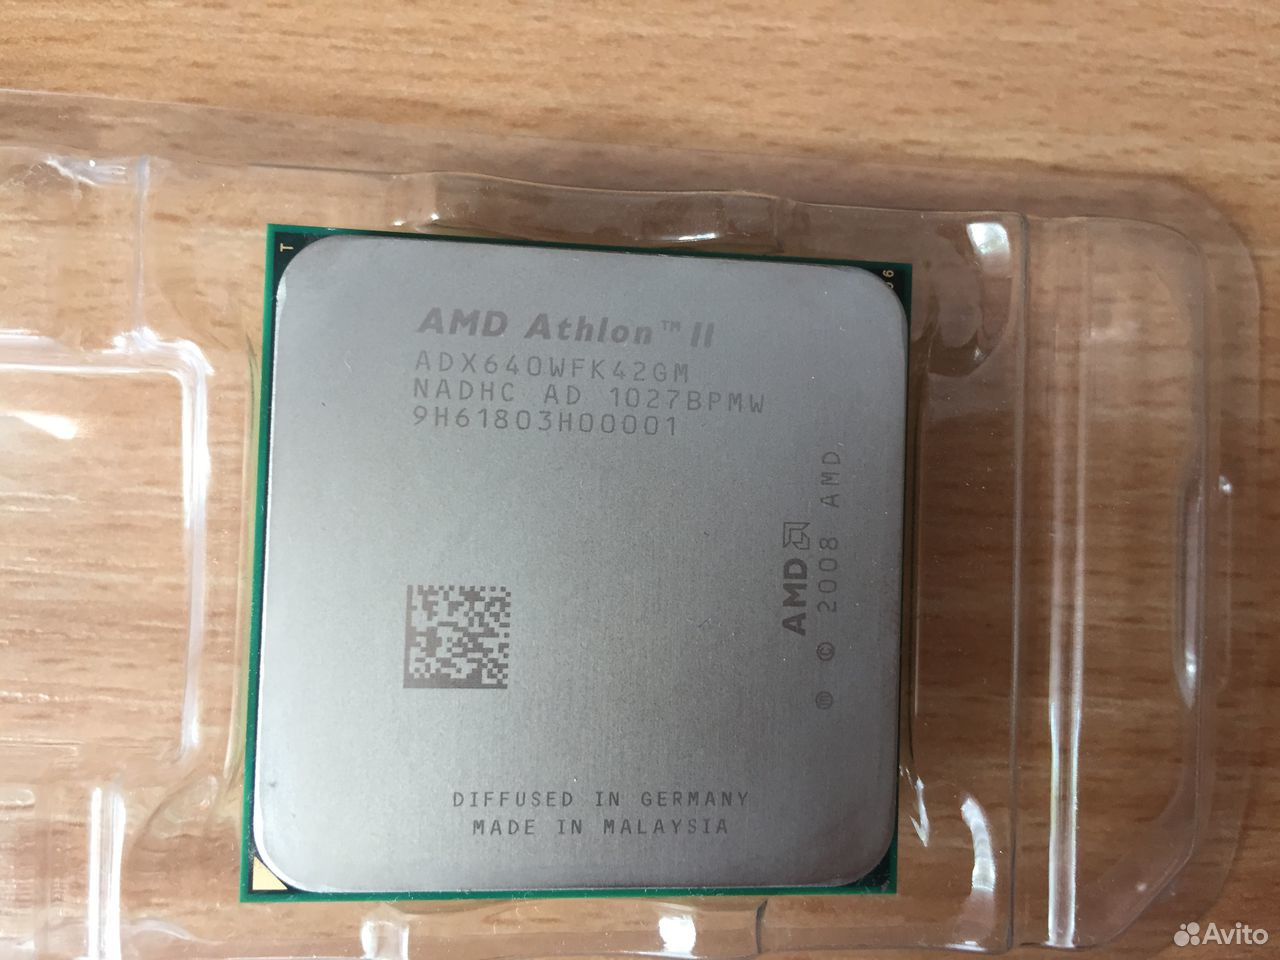 Amd athlon x4 3.00 ghz. AMD Athlon 2 x4 640. AMD Athlon II x4 640 am3. AMD Athlon II x4 640 Processor 3.00 GHZ. Процессор Athlon 4 630.